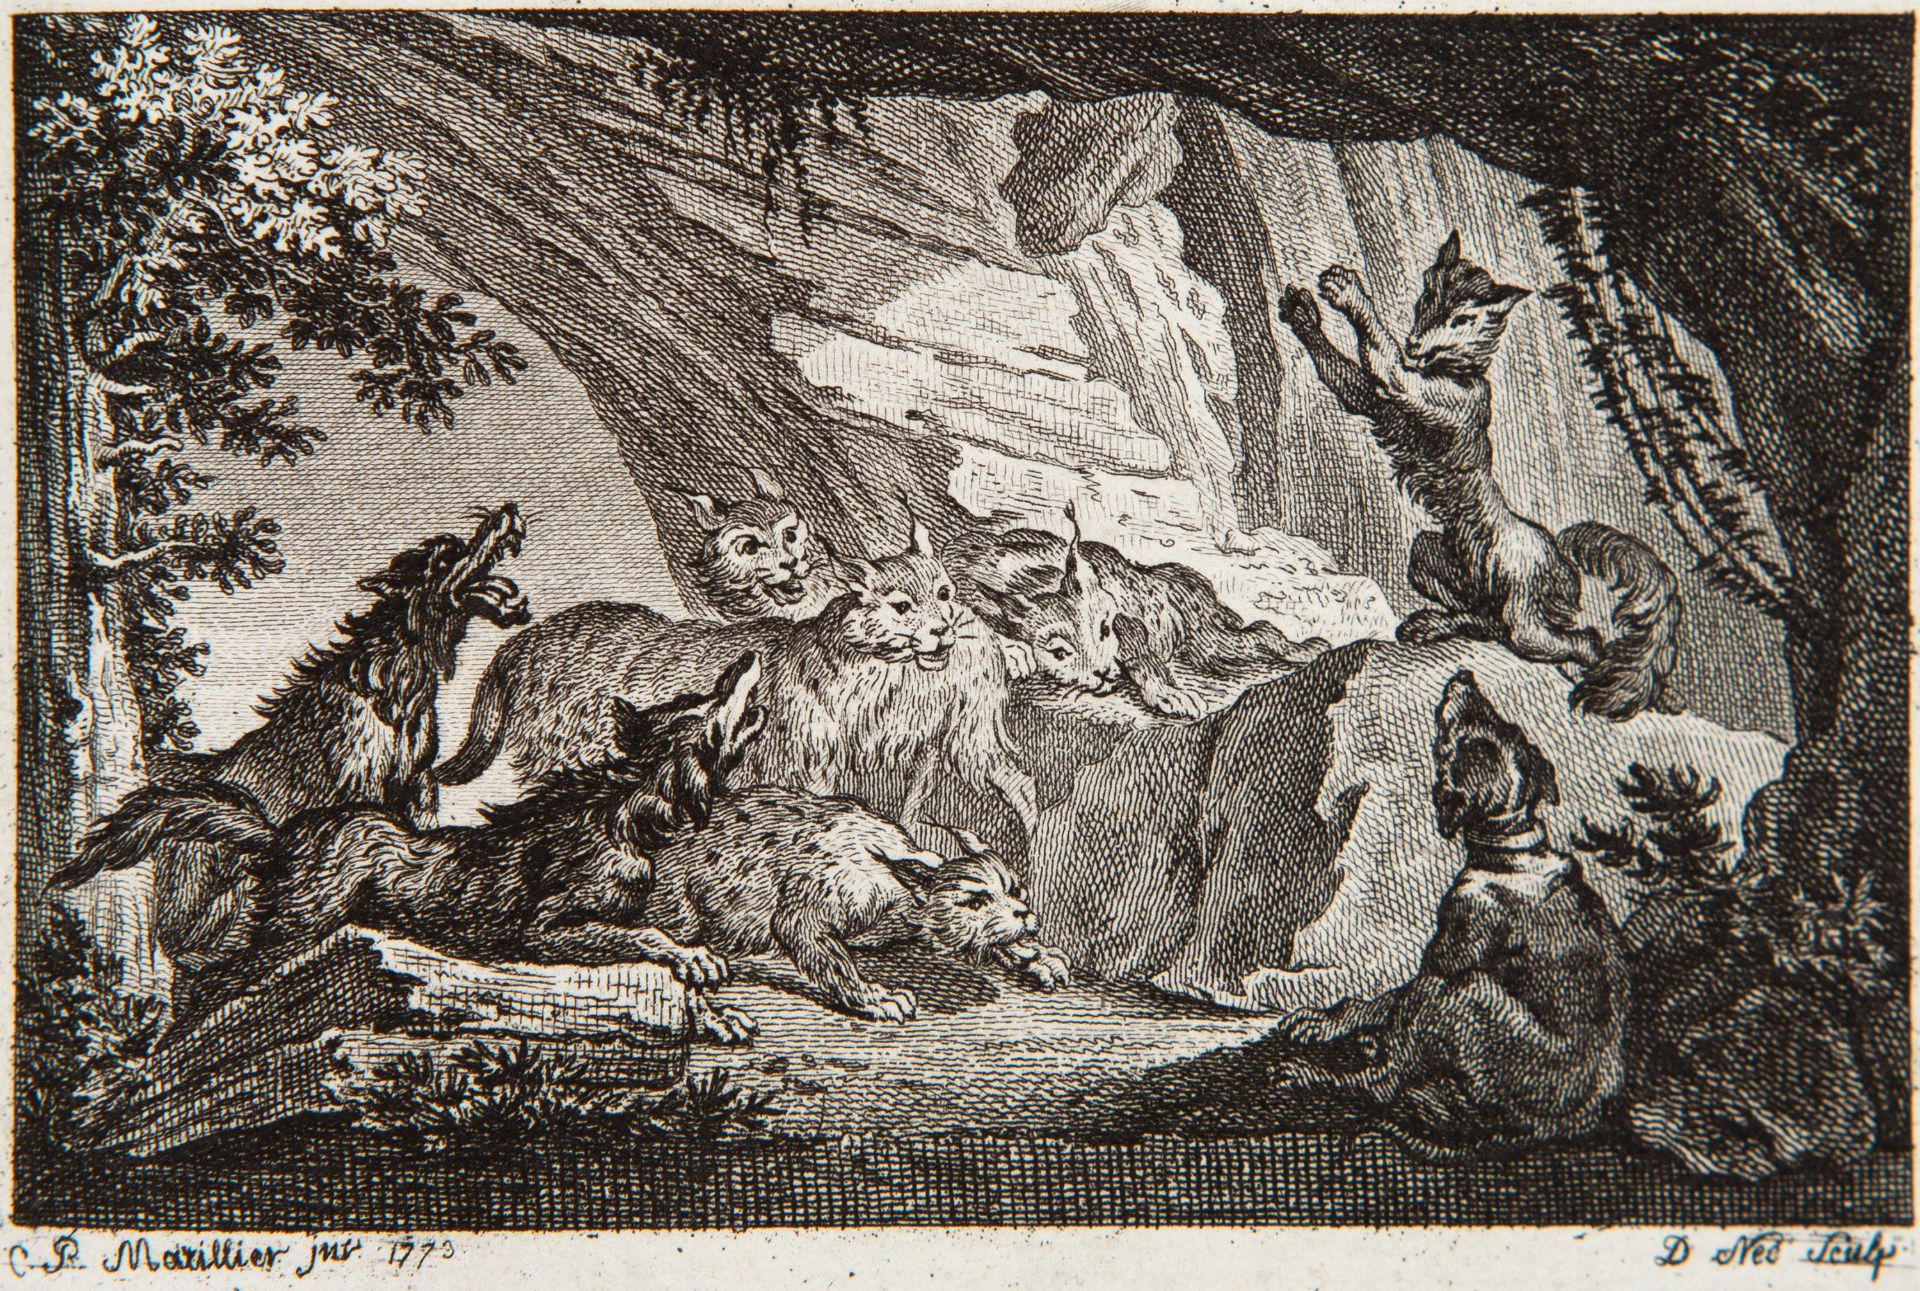 C. J. Dorat, Fables nouvelles. 2 Bde. in 1 Bd. Den Haag 1773-75. - Image 3 of 4